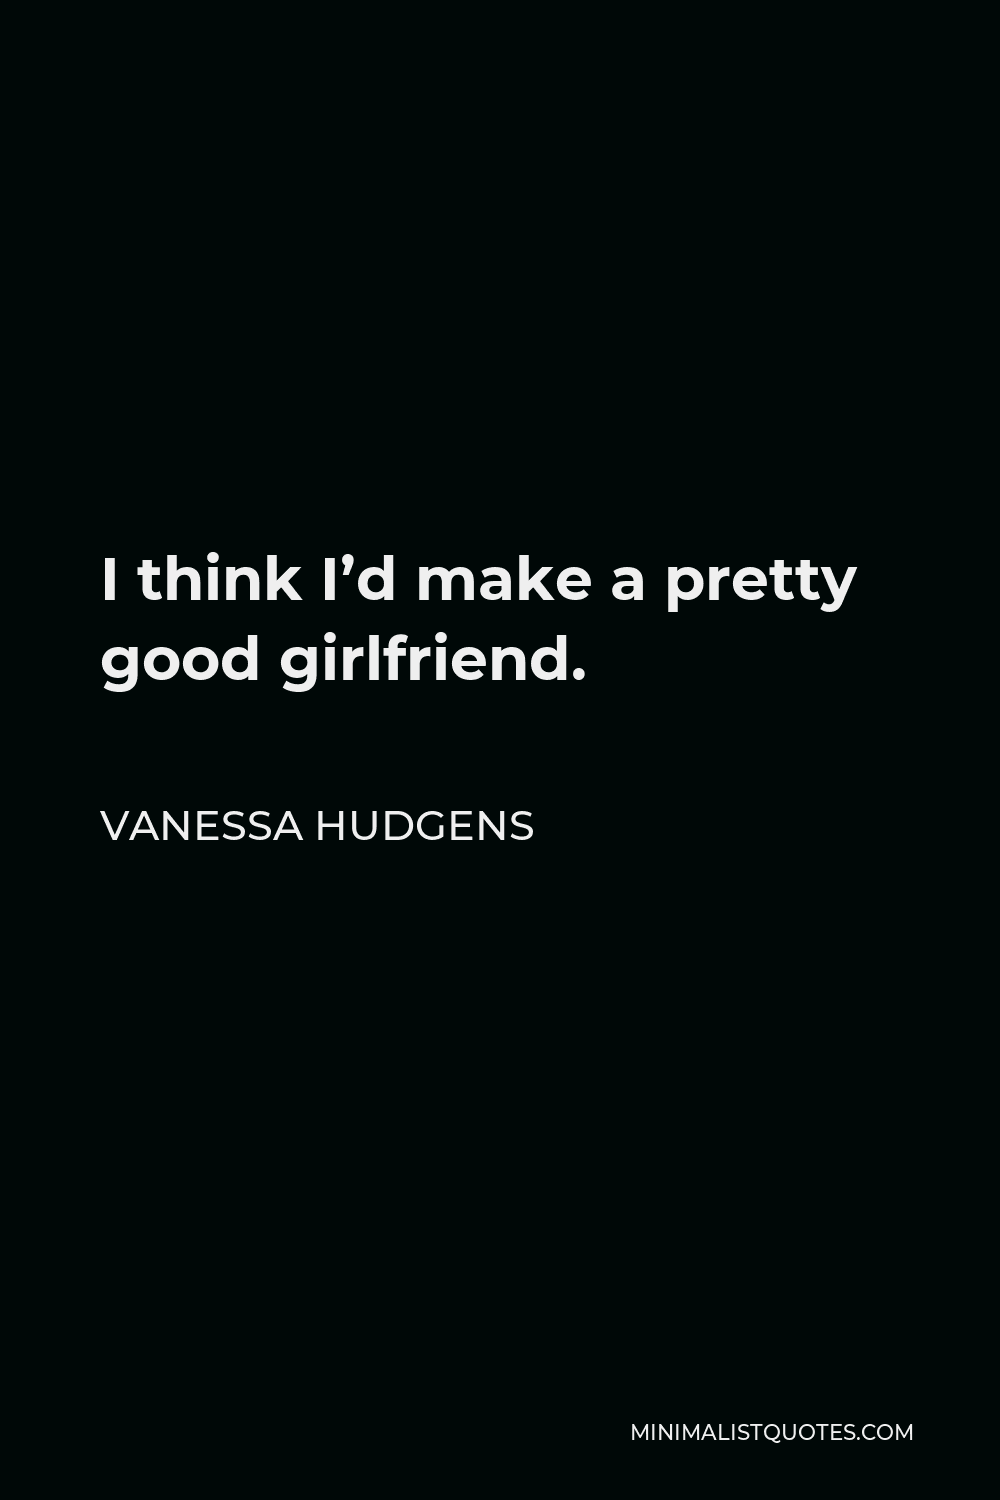 Vanessa Hudgens Quote - I think I’d make a pretty good girlfriend.